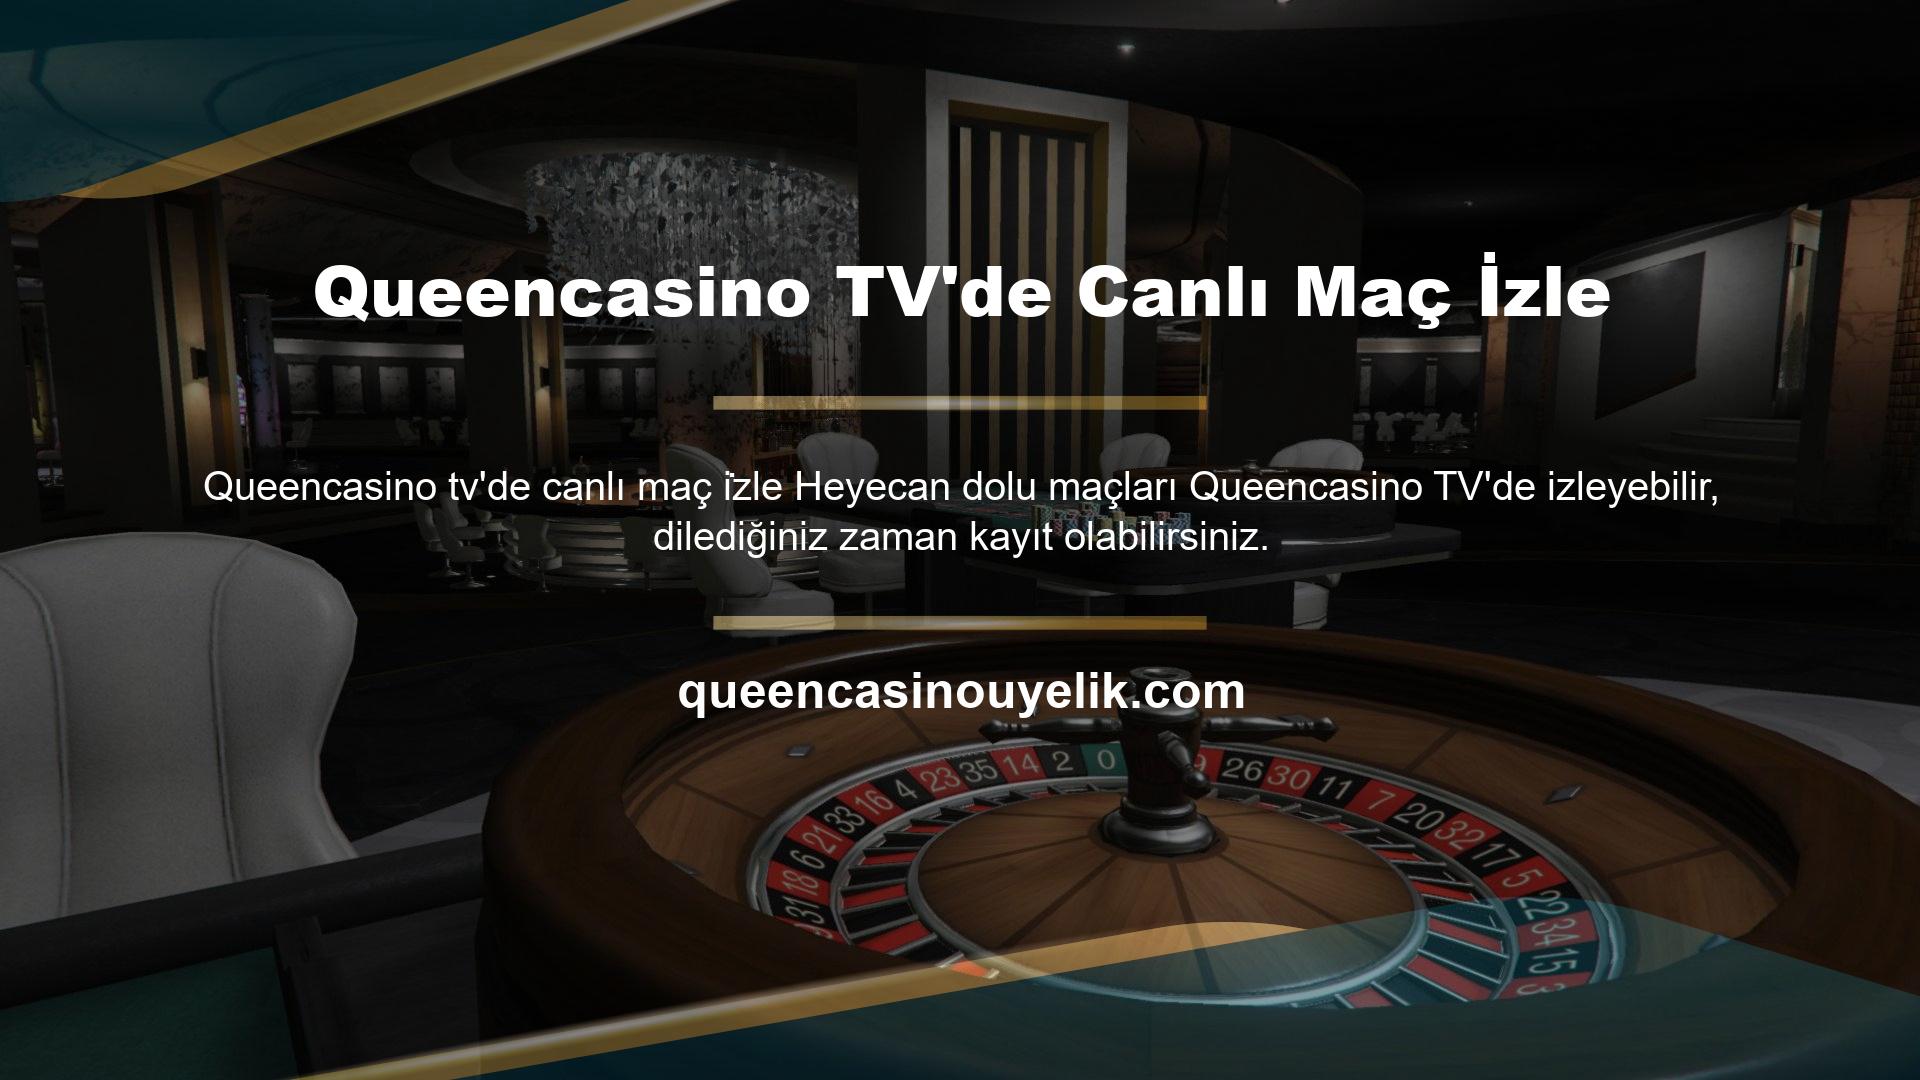 Queencasino TV'de Canlı Maç İzle En iyi küresel liglerden harika oyunlar her zaman bu sitede mevcuttur